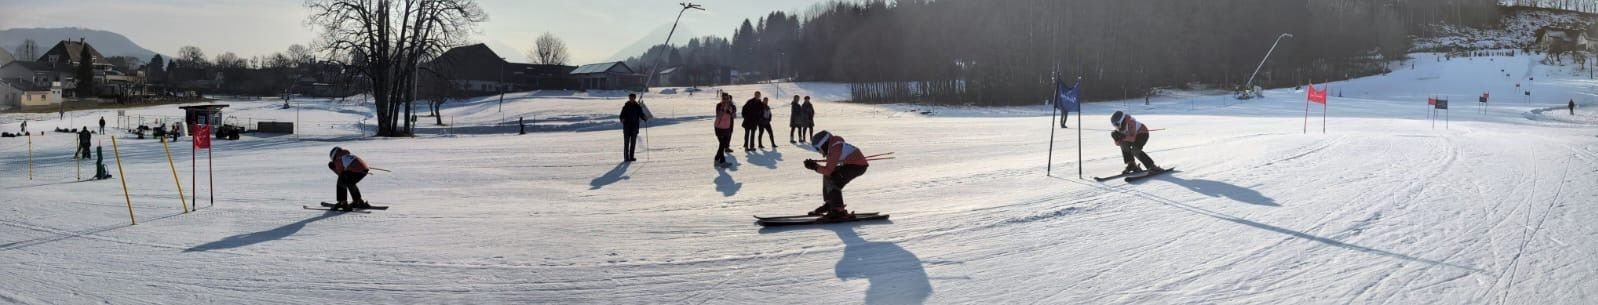 Wintersporttag - Bild 1